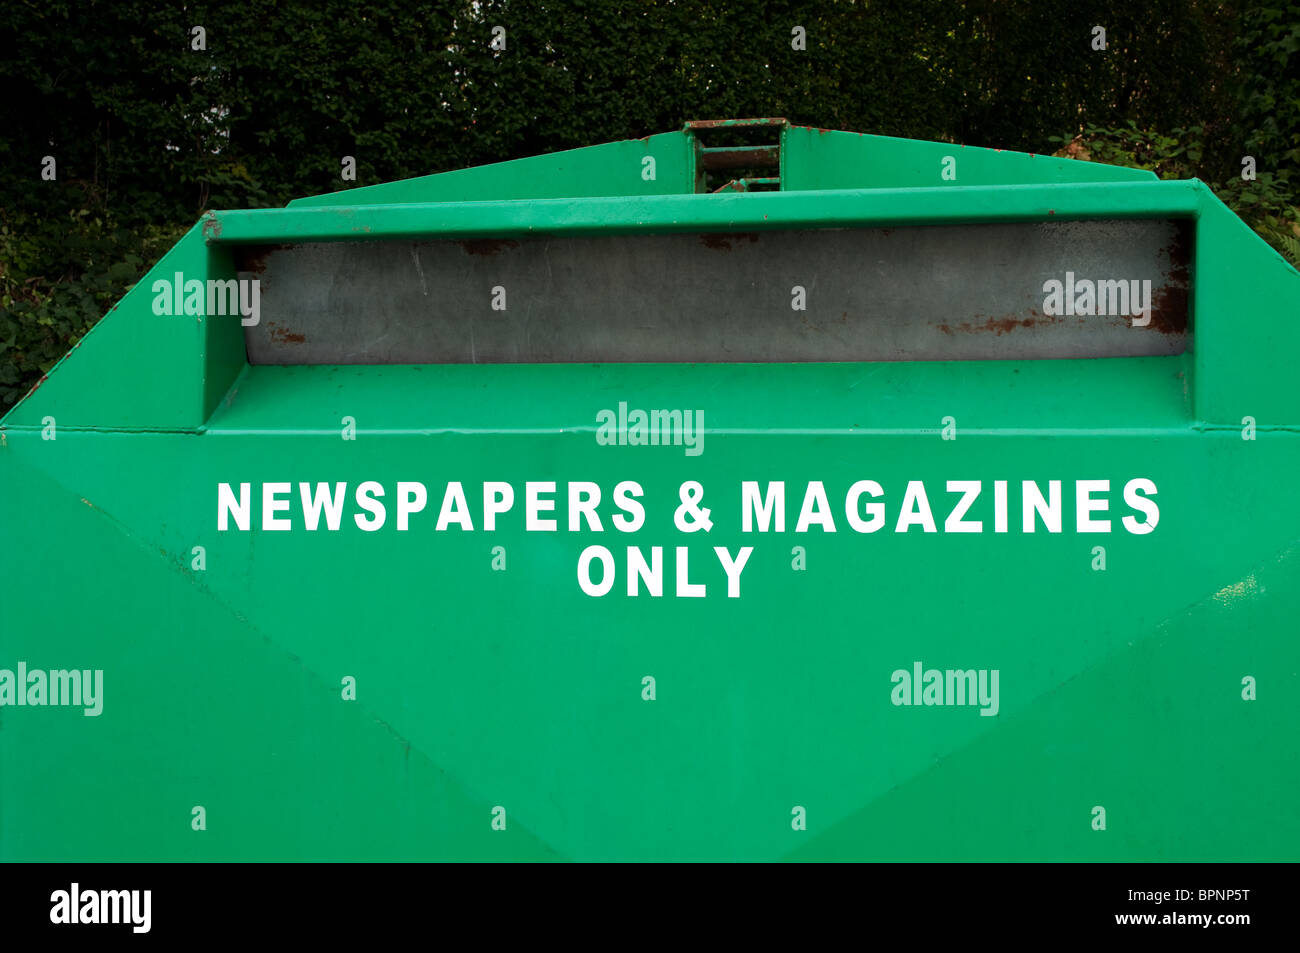 Un bac de recyclage pour des magazines et journaux, uk Banque D'Images